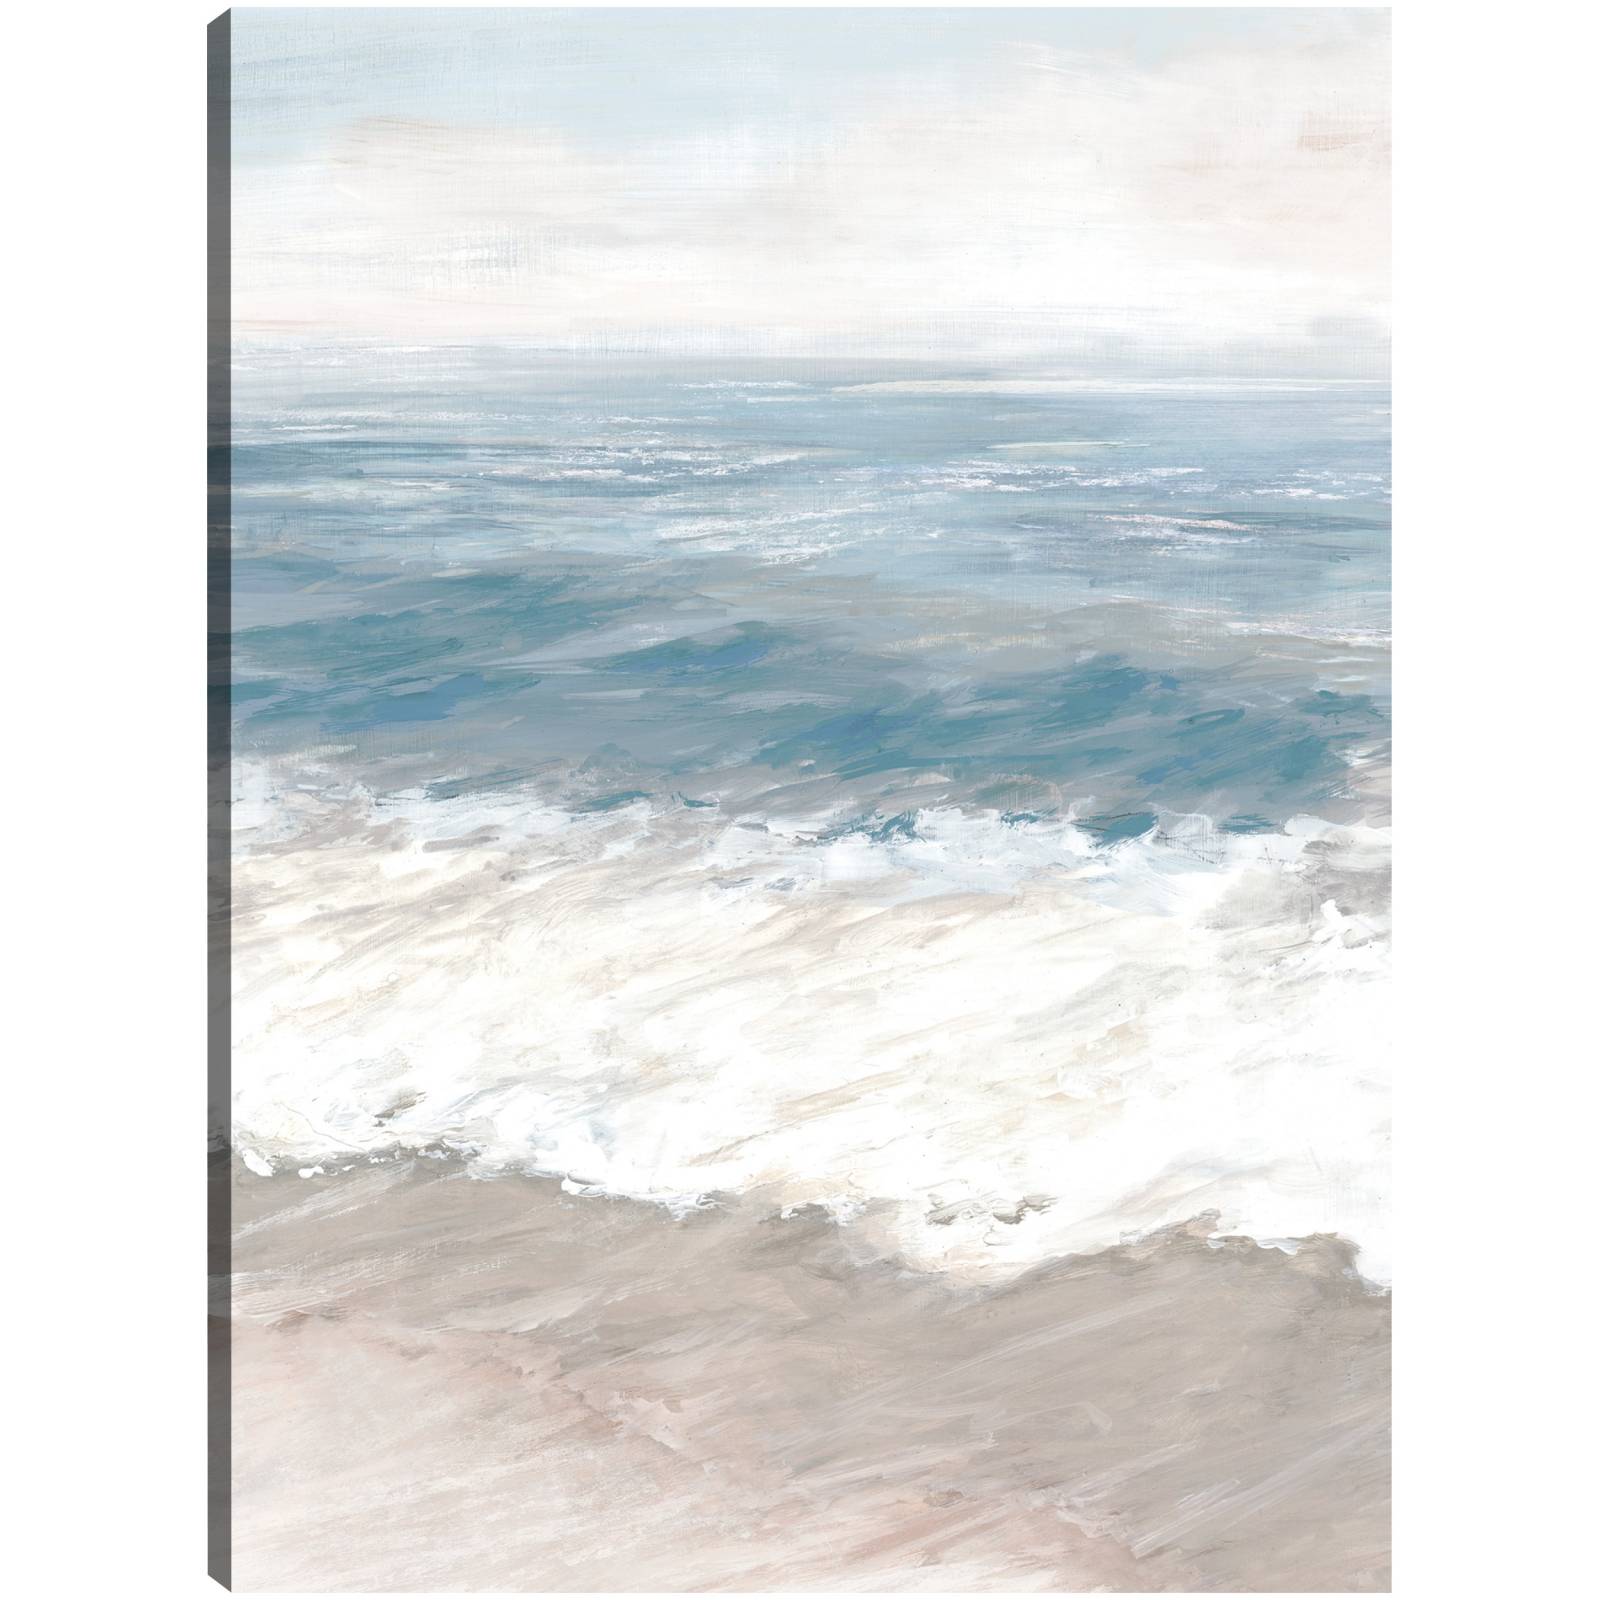 Cuadro Decorativo Olas Mar Minimalista Oceano En Canvas